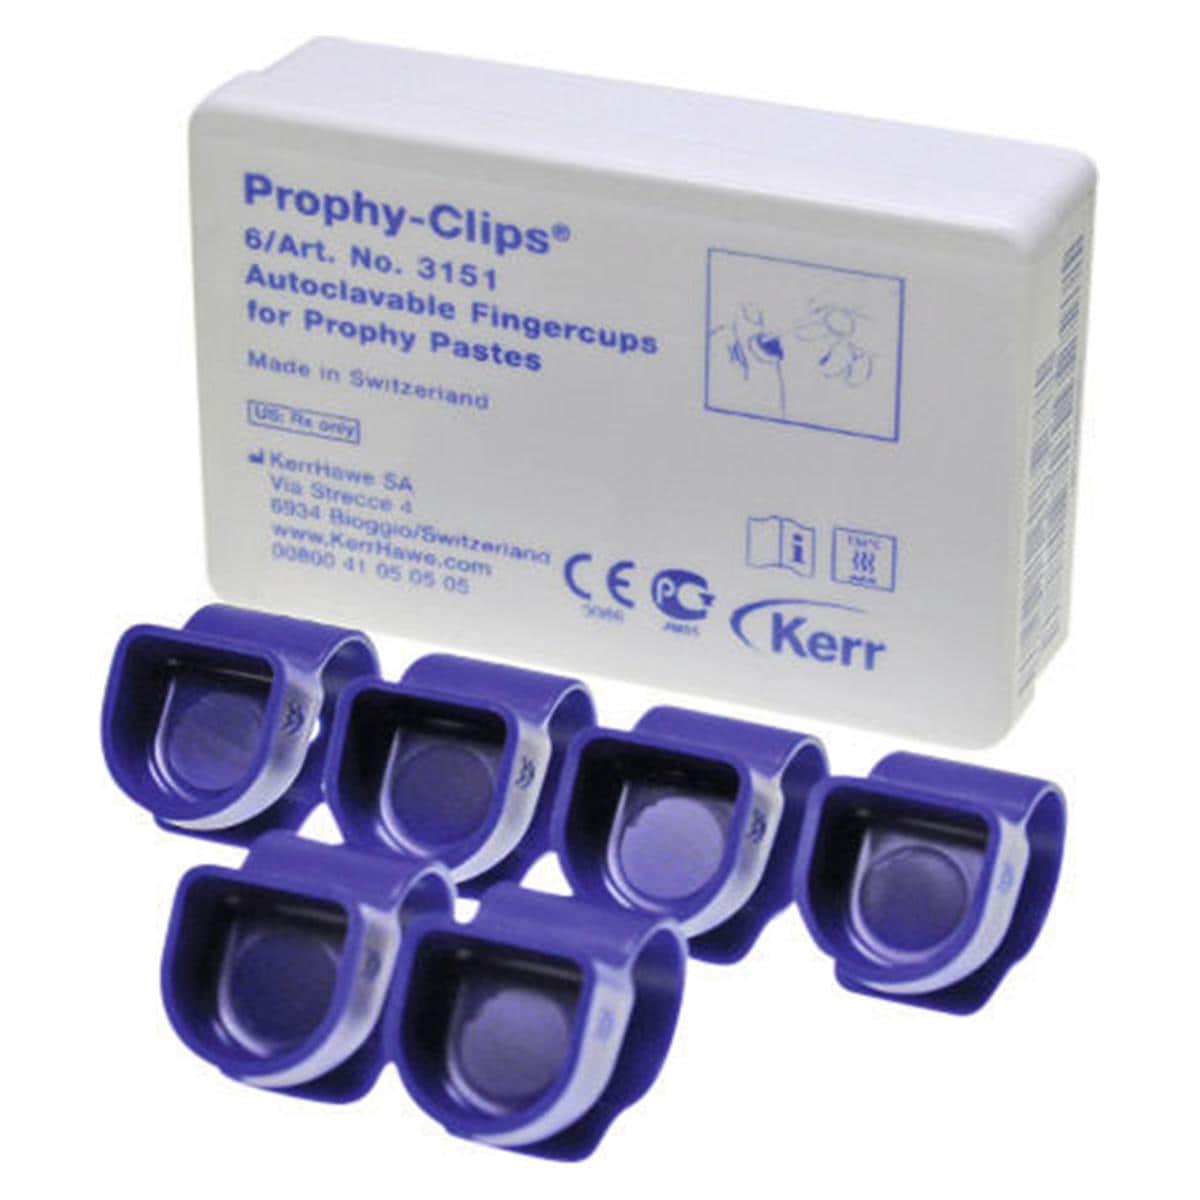 Prophy Clips - 3151, 6 pcs